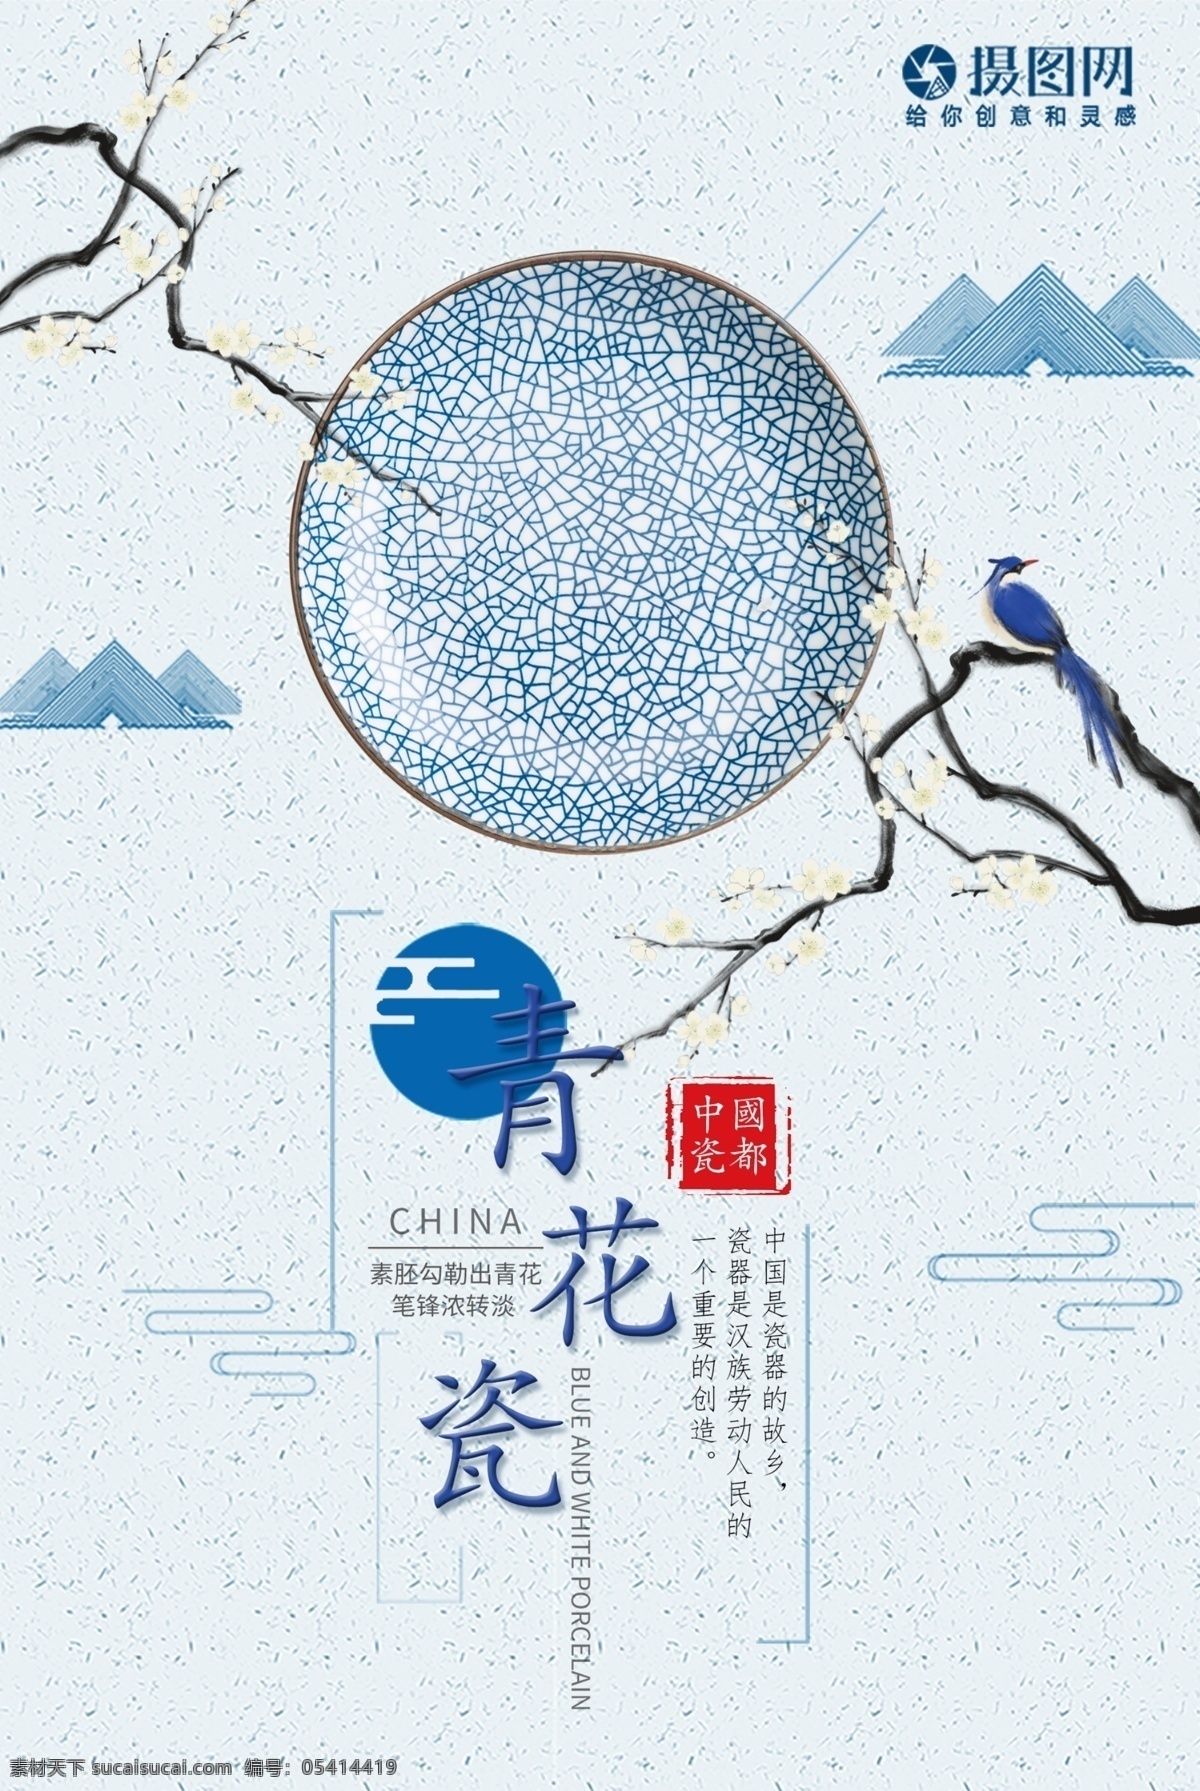 中国 艺术 传统文化 青花瓷 盘子 海报 艺术瓷器 陶瓷 中国传统文化 中国风 文雅海报 艺术品 陶艺 非遗